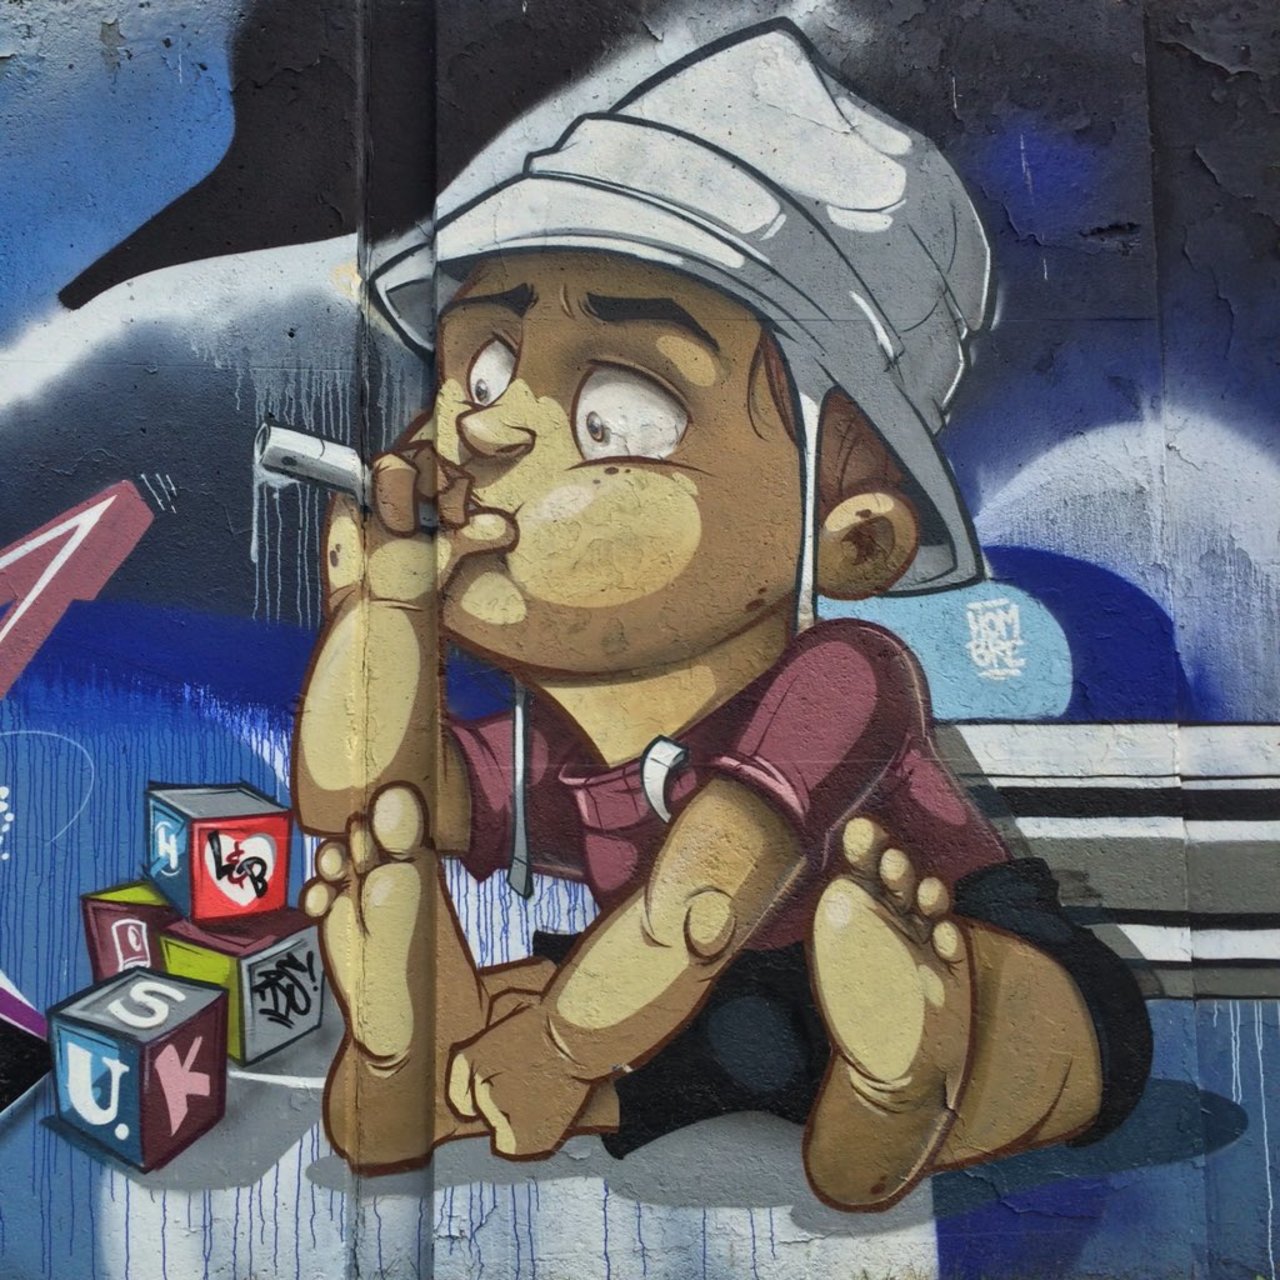 ||Berenkuil.Street.Art.||
#streetart #art #graffiti #graffity #kunst #urban #travel #streetview #eindhoven https://t.co/Kq1EmQznin